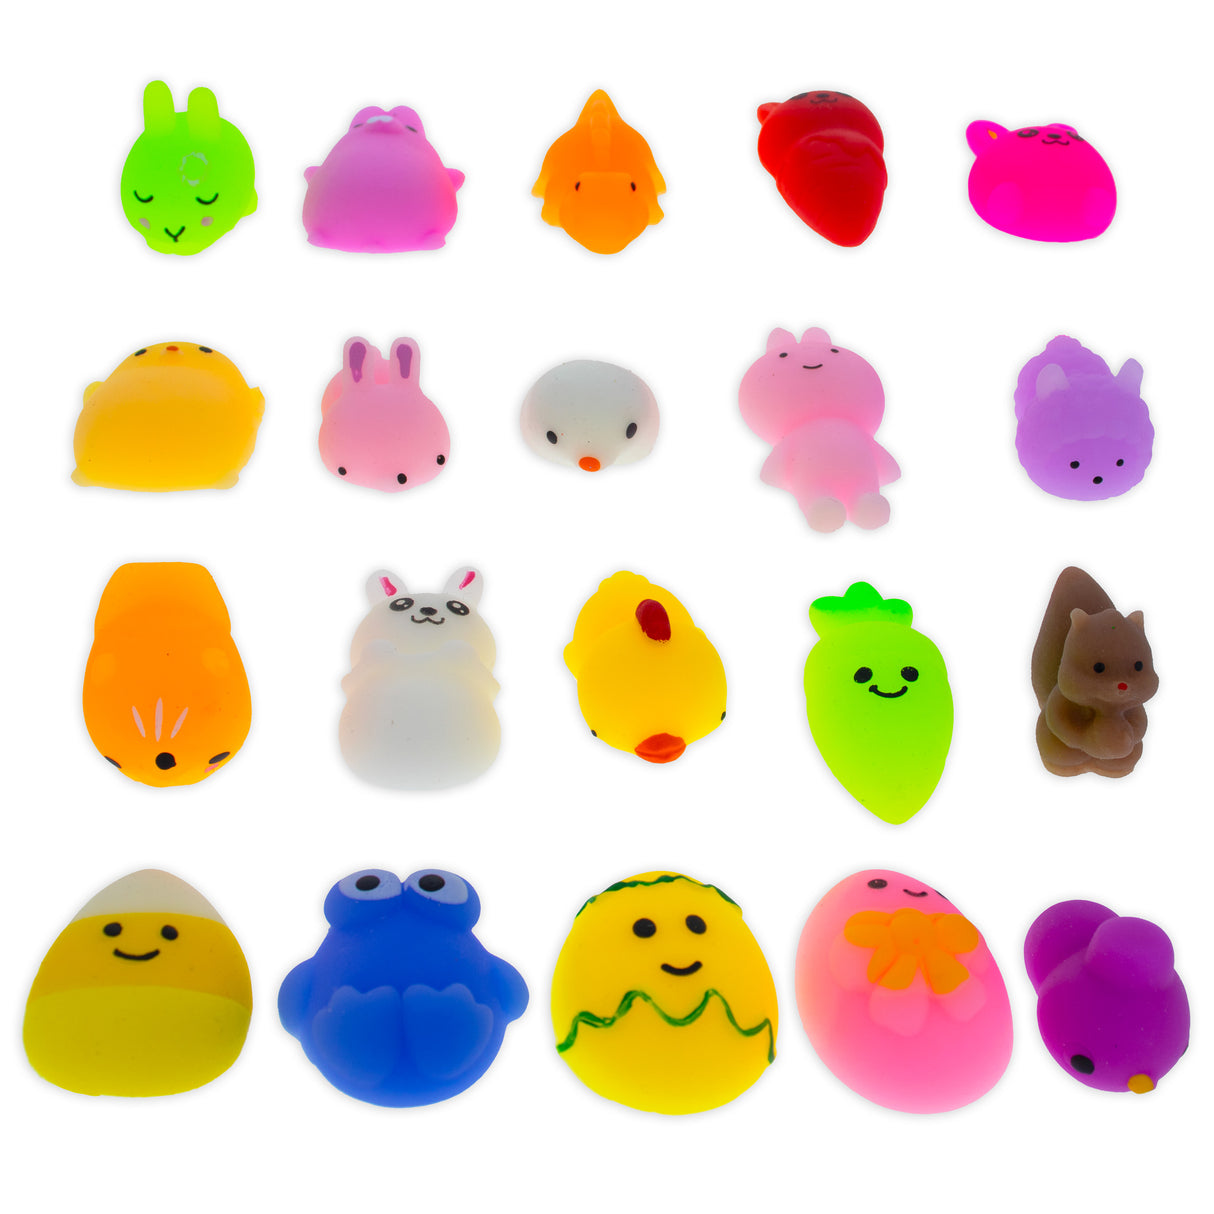 BestPysanky online gift shop sells Plastic eggs